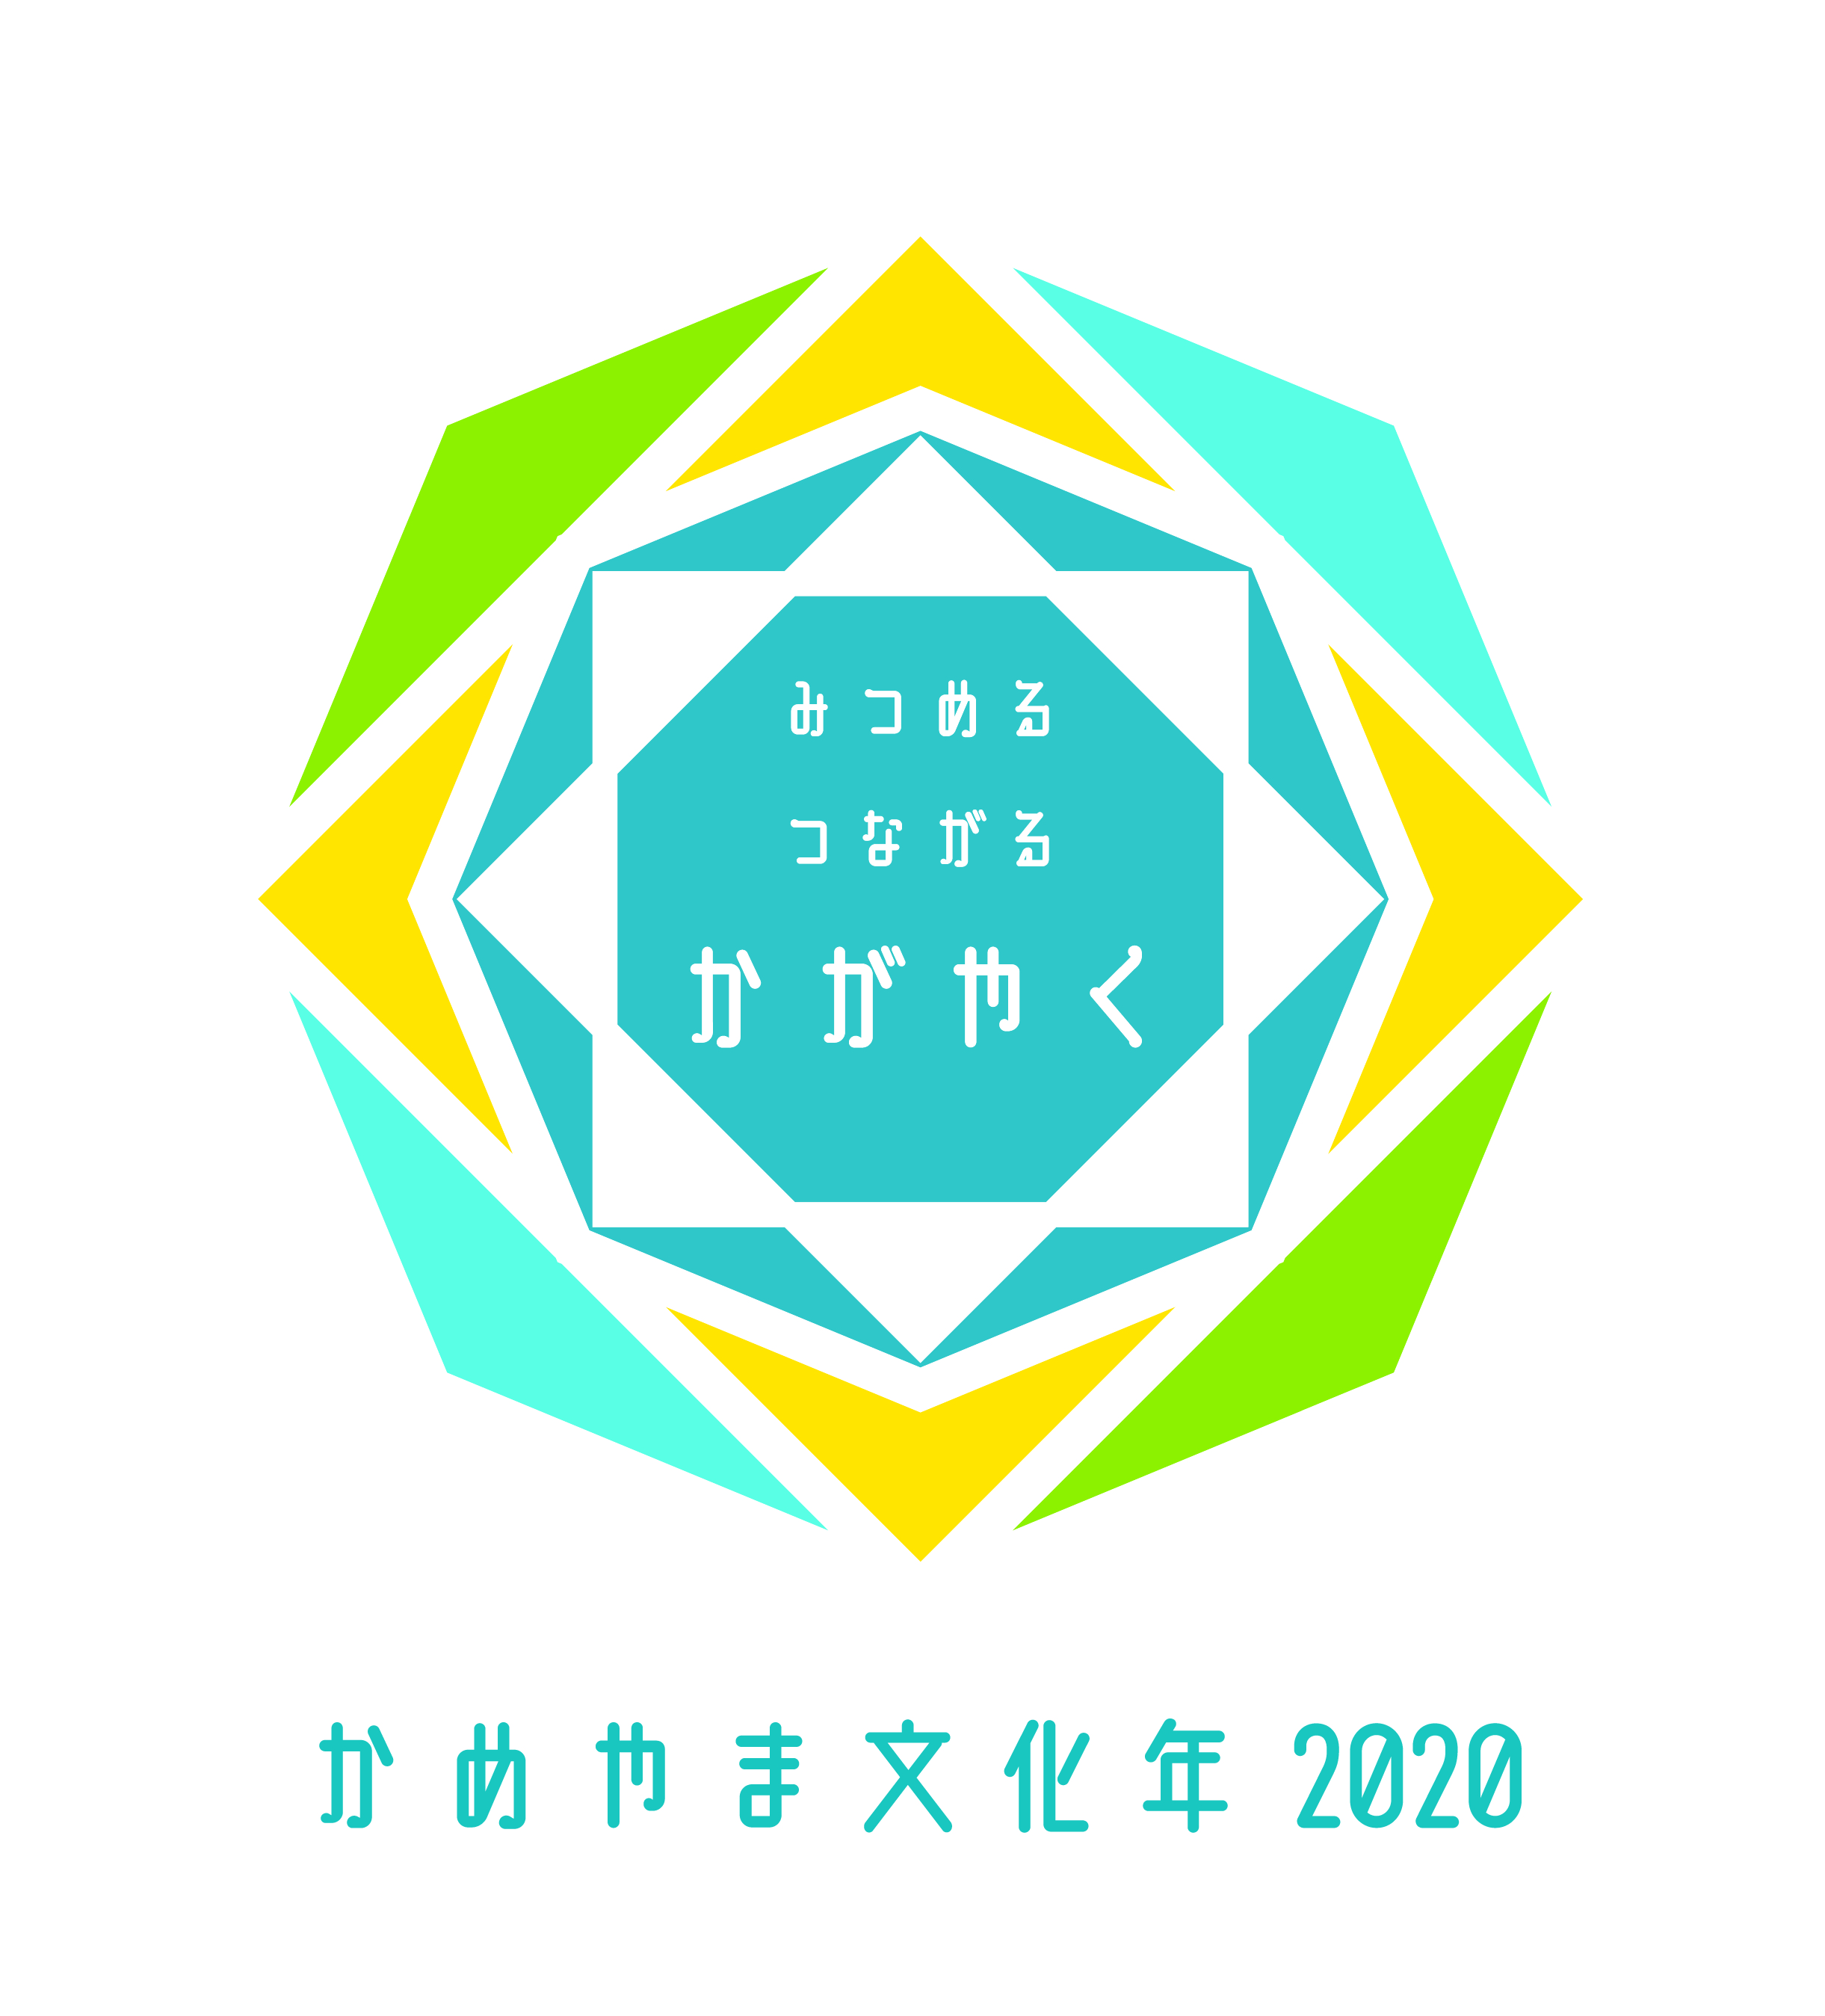 かめやま文化年2020ロゴデザイン